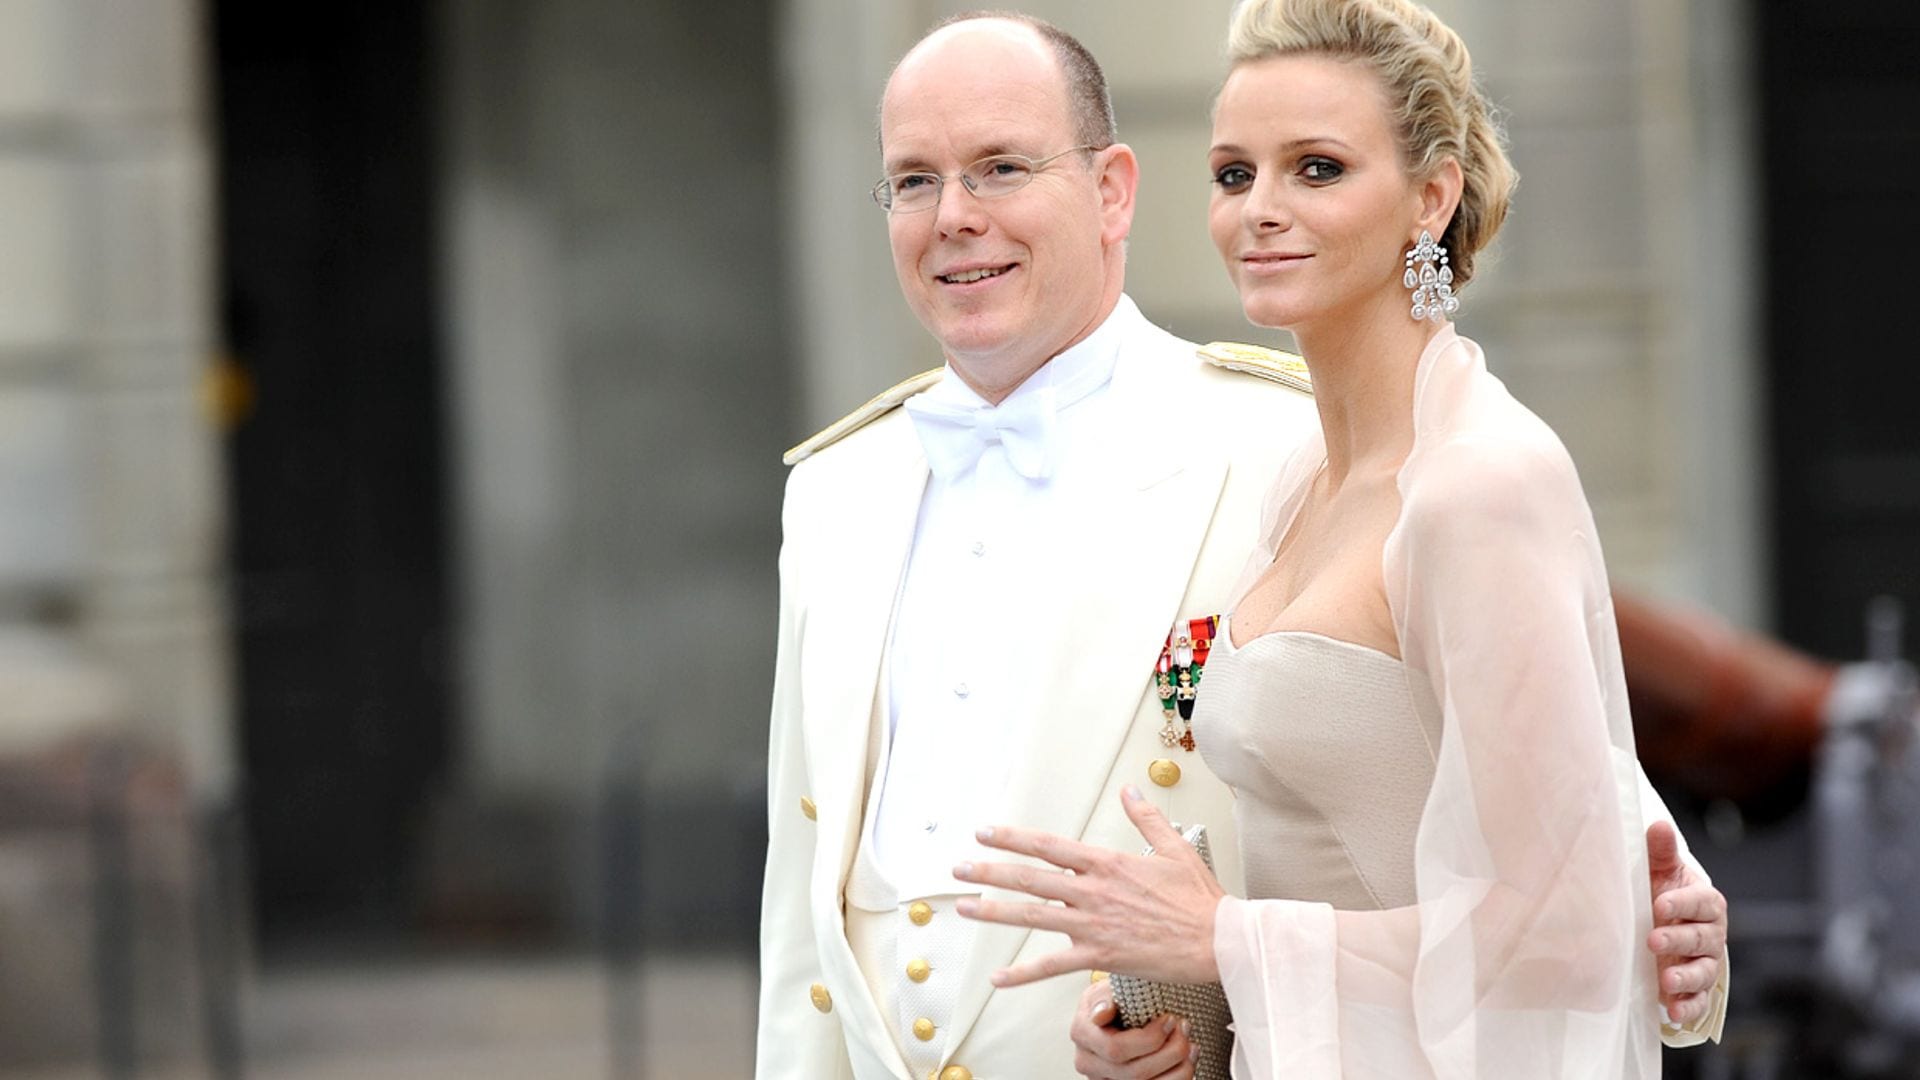 El de Charlene, Máxima y otros espectaculares looks que fascinaron en la boda de Victoria de Suecia